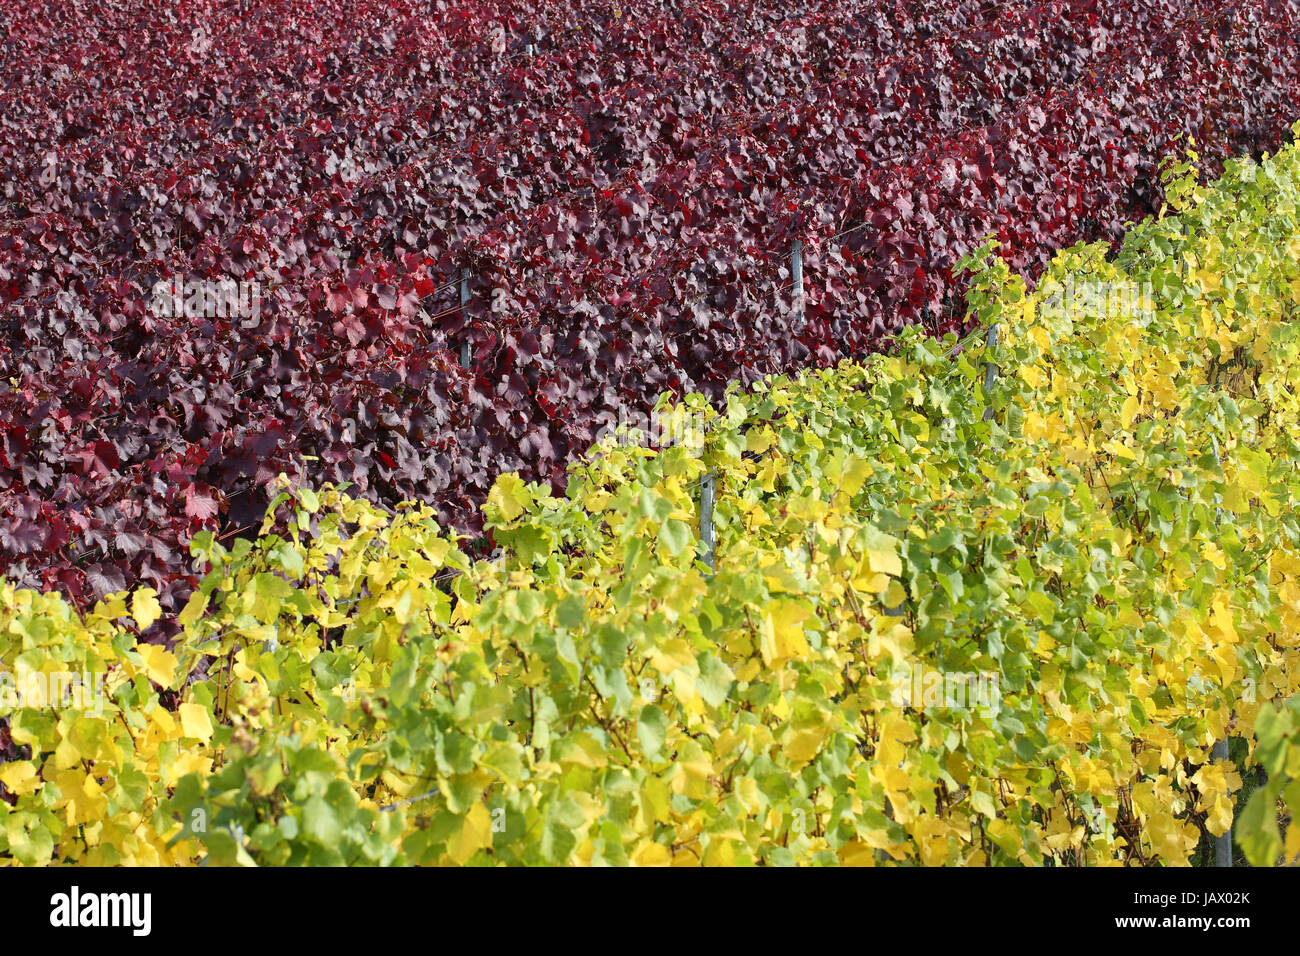 Bunte Weinberge mit Weinreben für Rotwein und Weißwein im Herbst Stock Photo